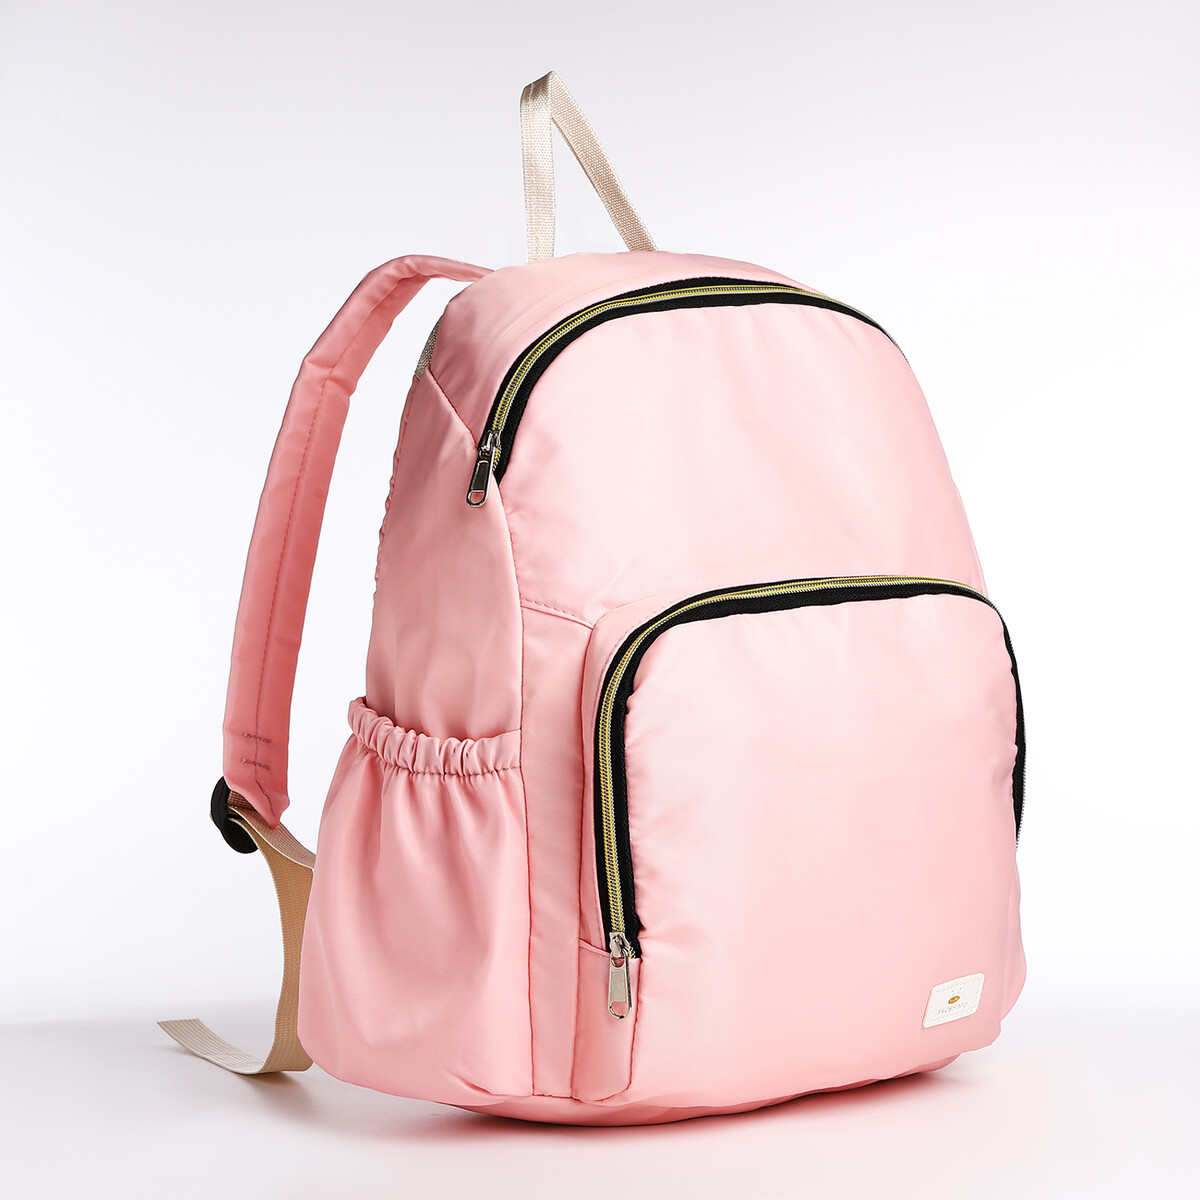 Рюкзак на молнии, цвет розовый рюкзак kingkong i 10 wb 9062 черн средний фоторюкзак